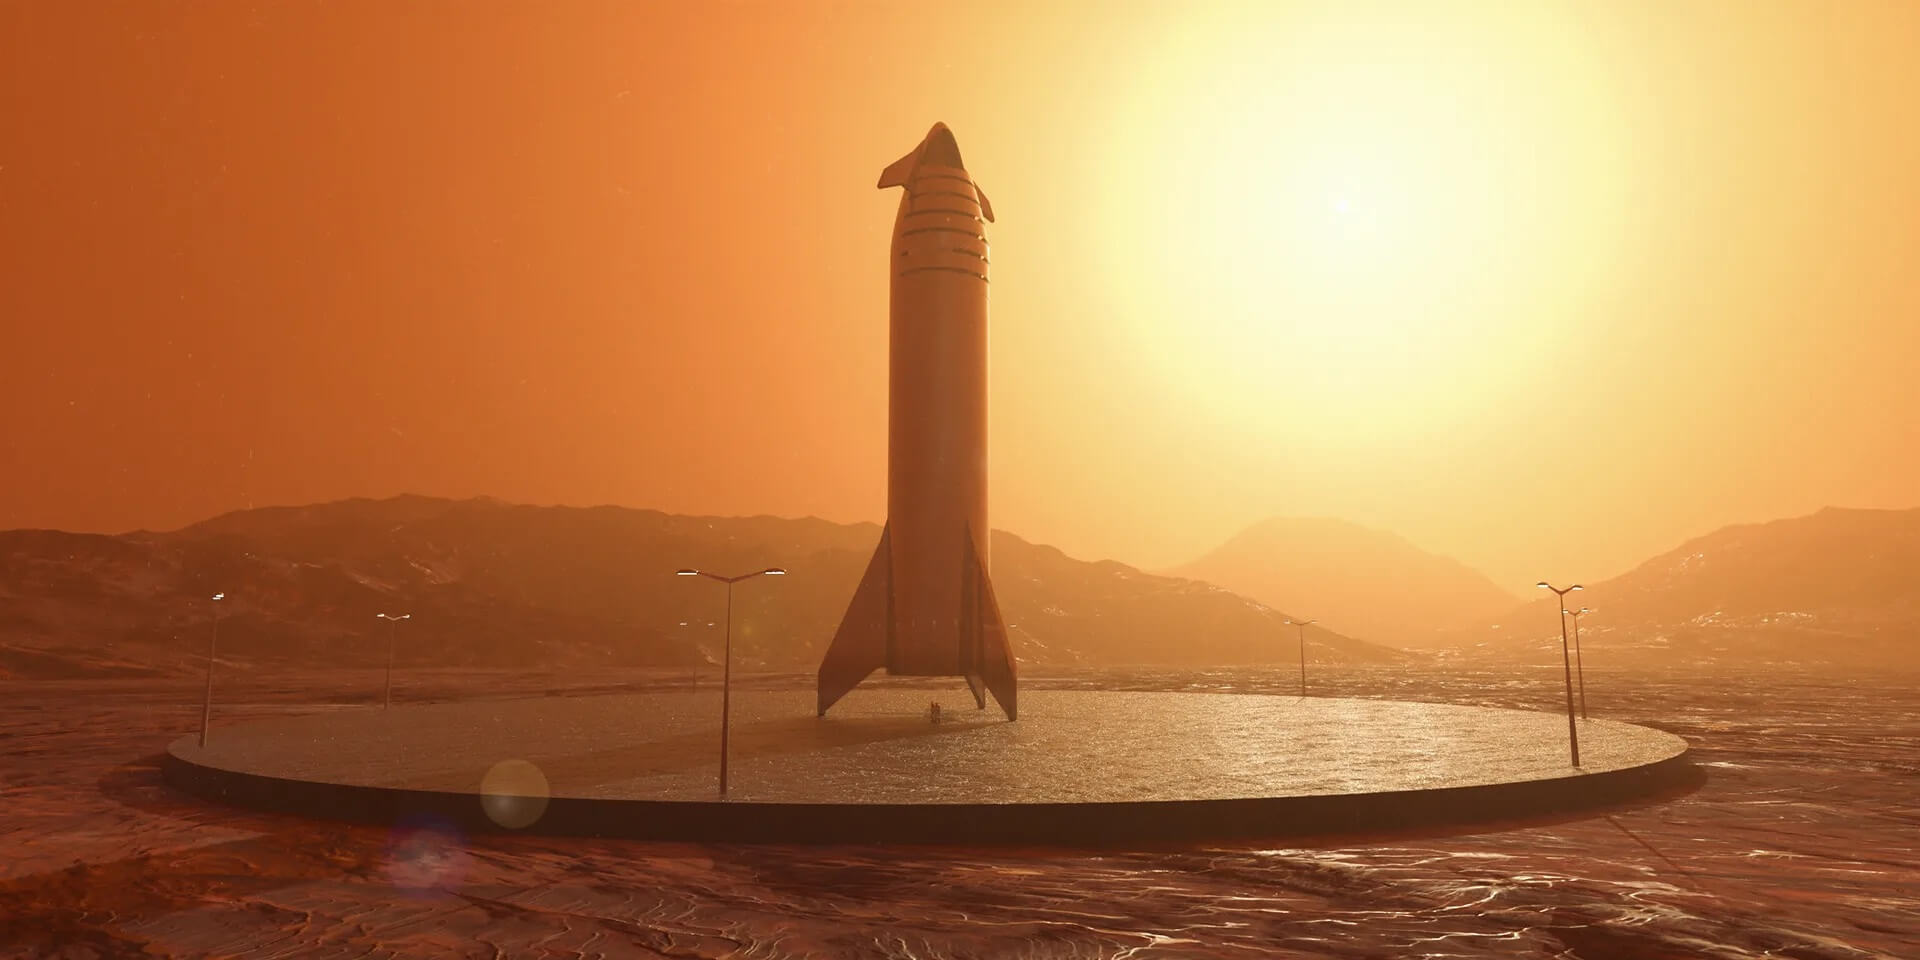 Илон Маск хочет отправить на Марс миллион человек — они больше не вернутся на Землю. Человечество может полететь на Марс уже через несколько лет. Изображение: аккаунт Илона Маска в социальной сети X. Фото.